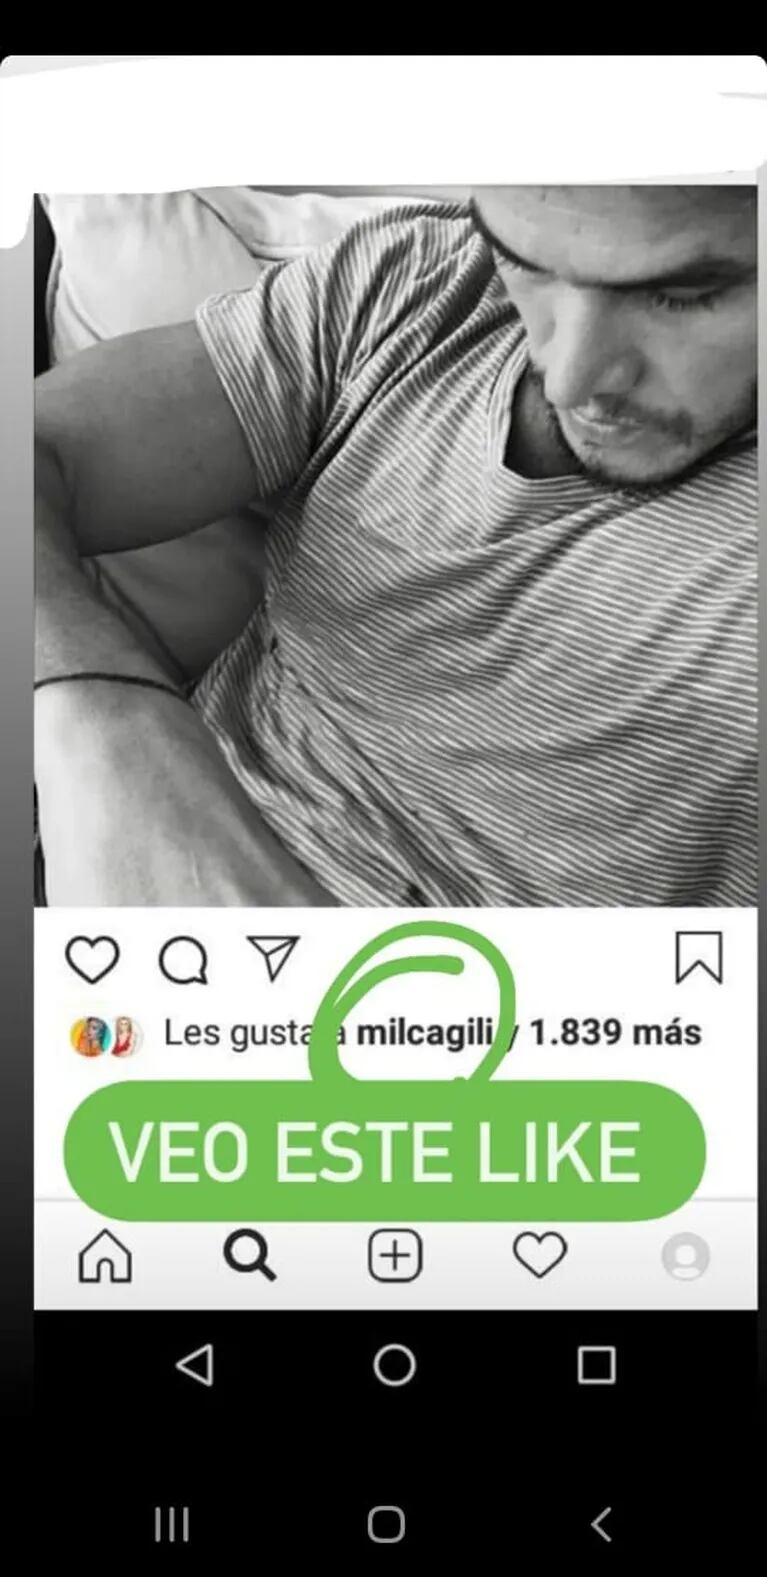 El intercambio sexy de likes de Emanuel Ortega con una bella modelo: el sugestivo "detalle" que descubrió Juariu